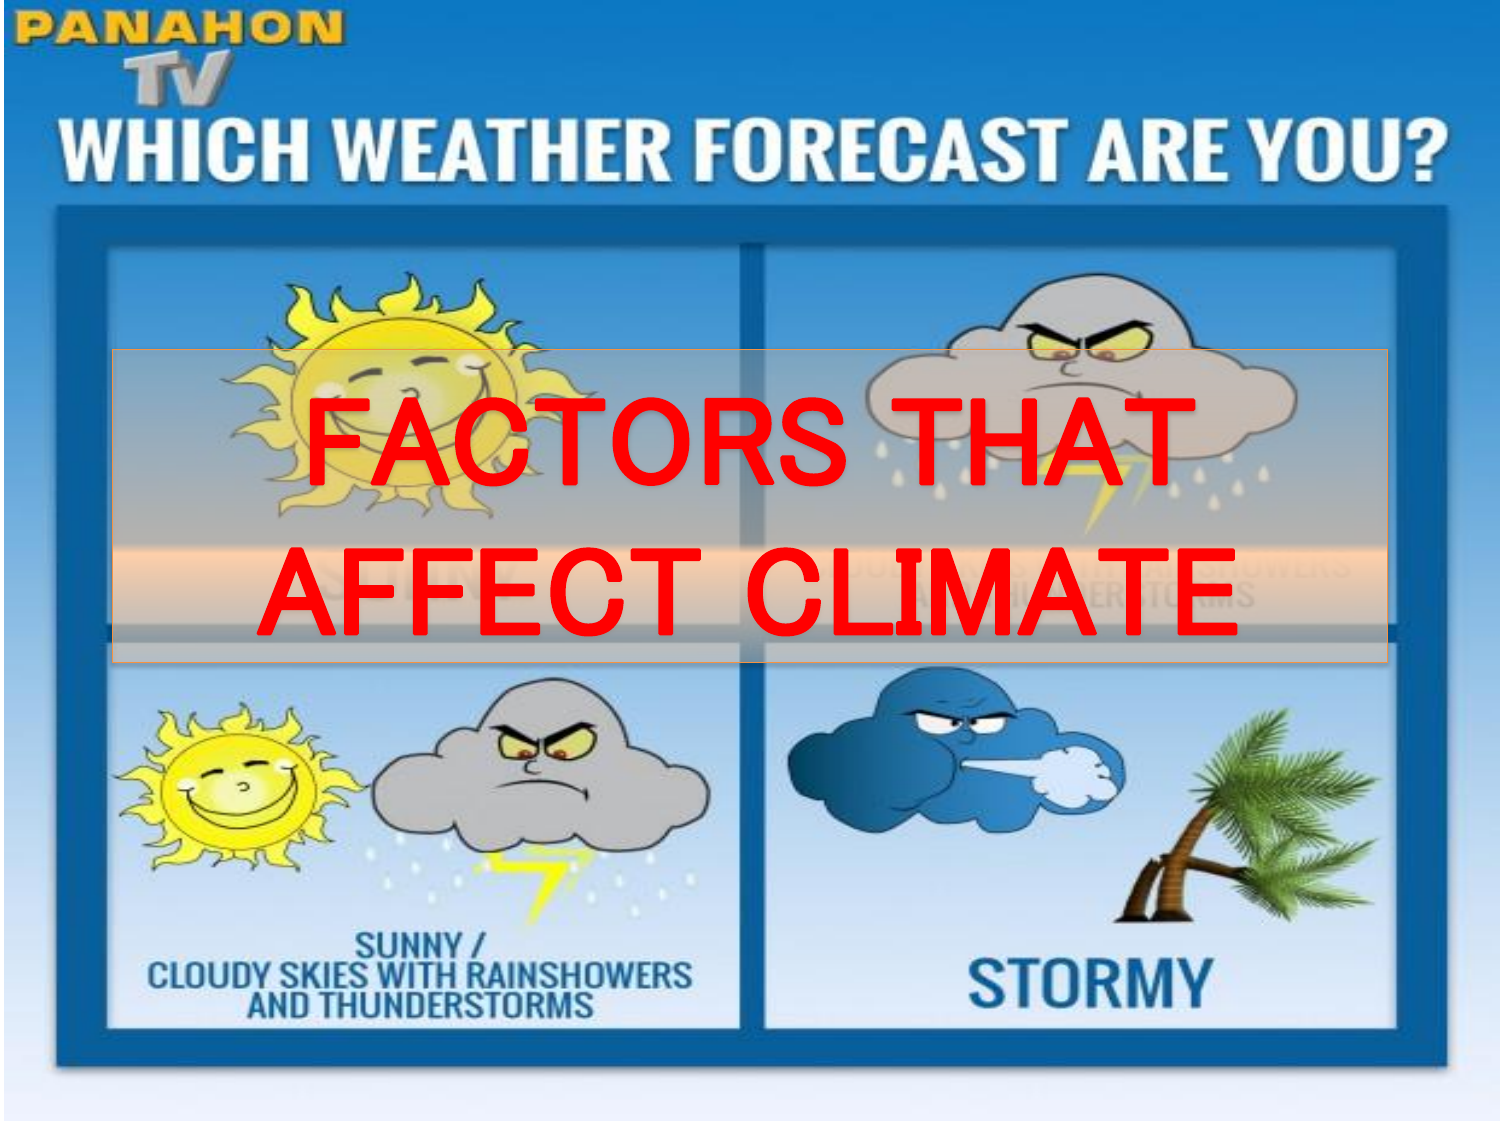 describe five factors that affect climate